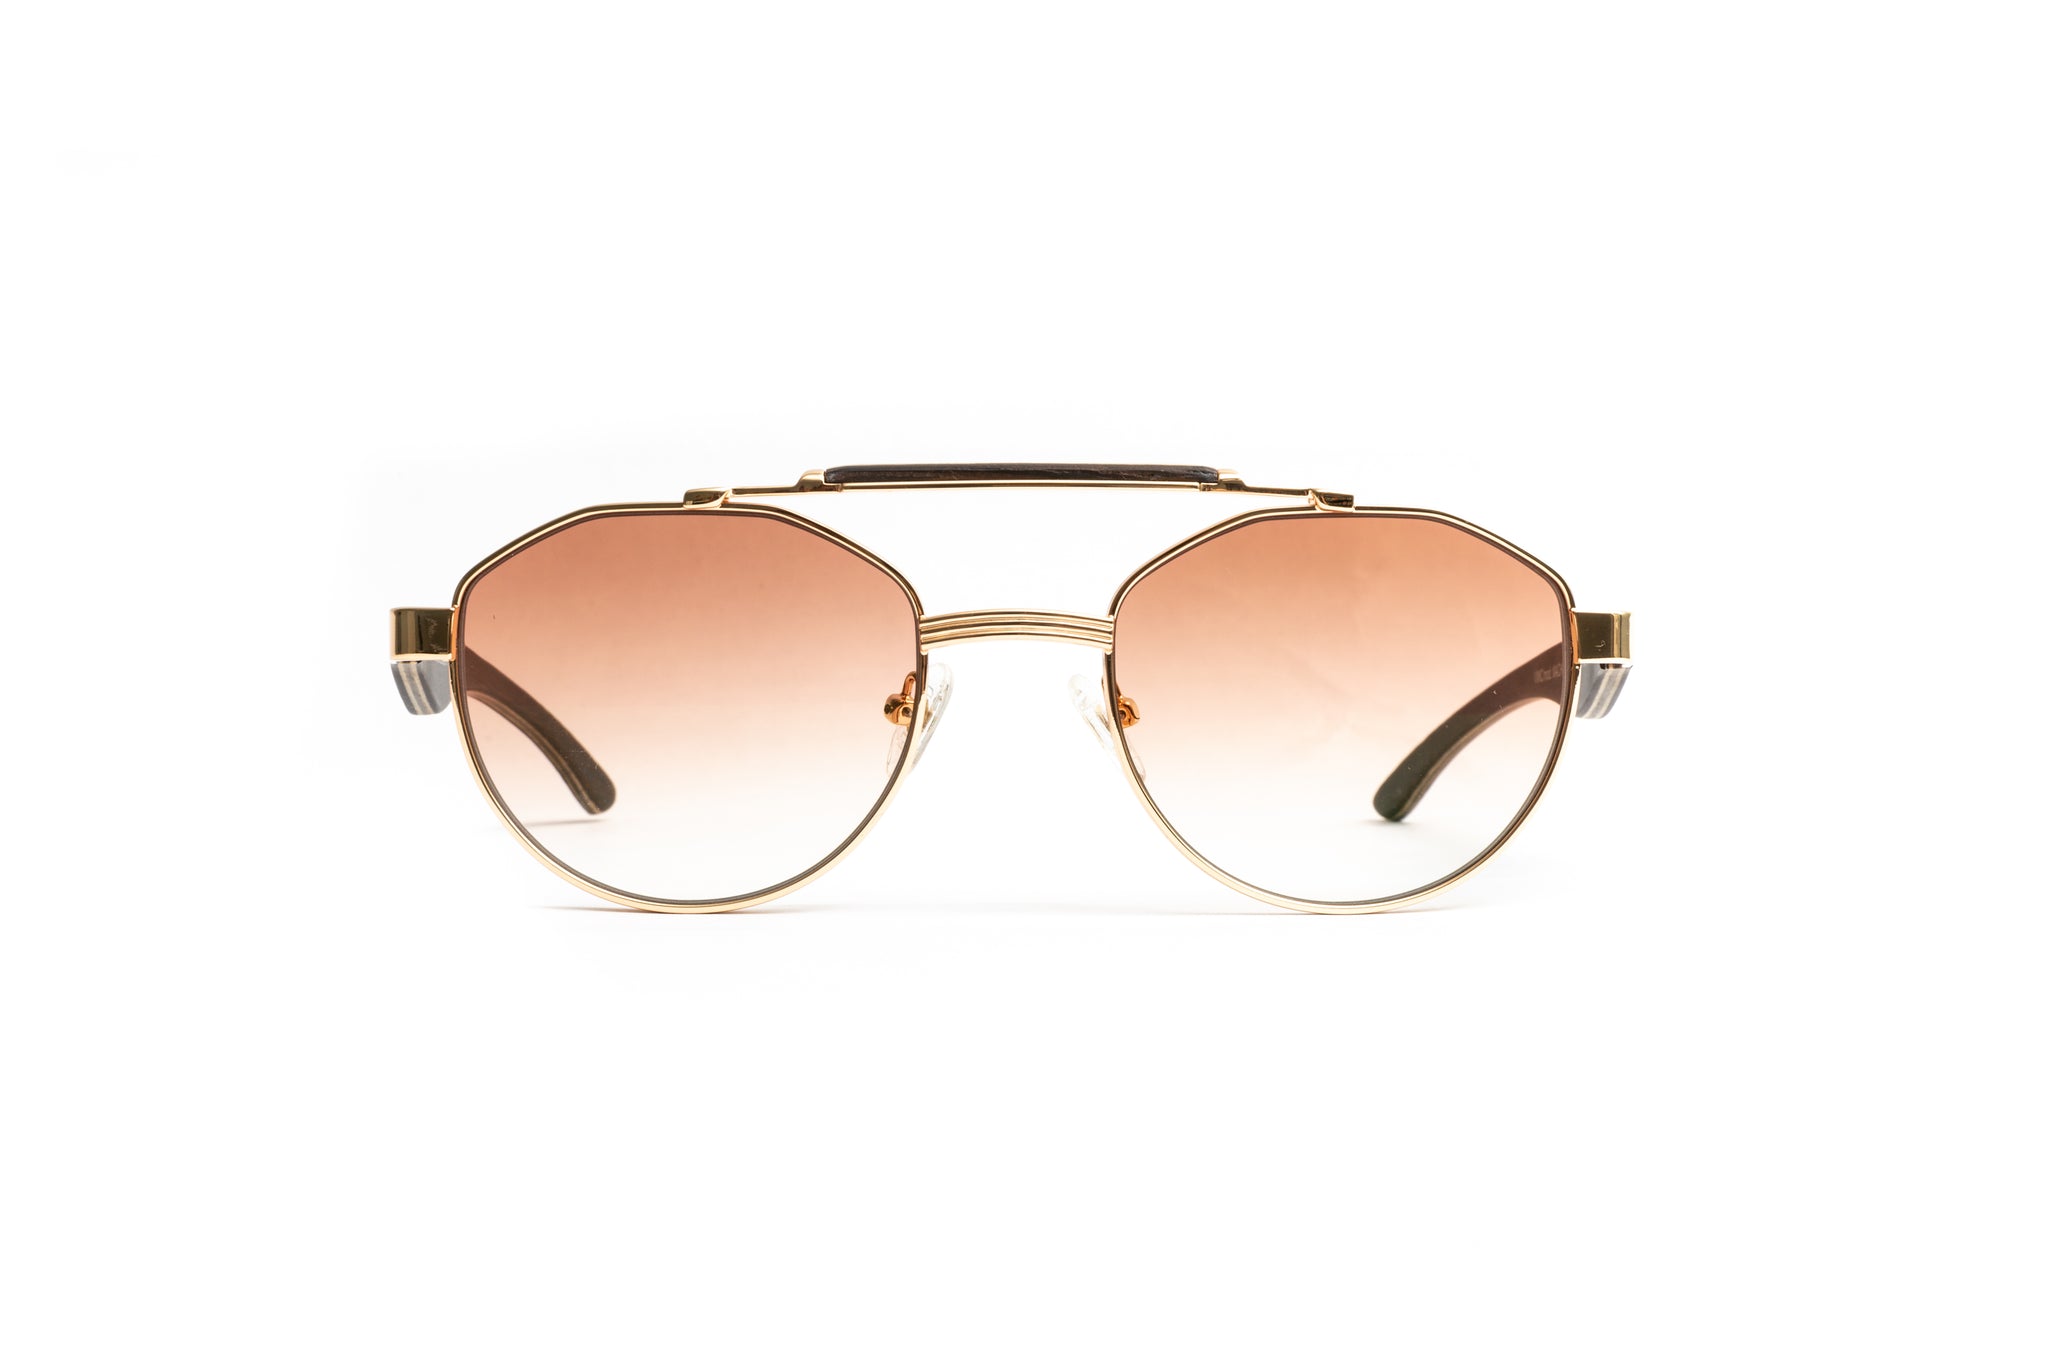 Round Retro Sunglasses, Brown Gradient Lenses